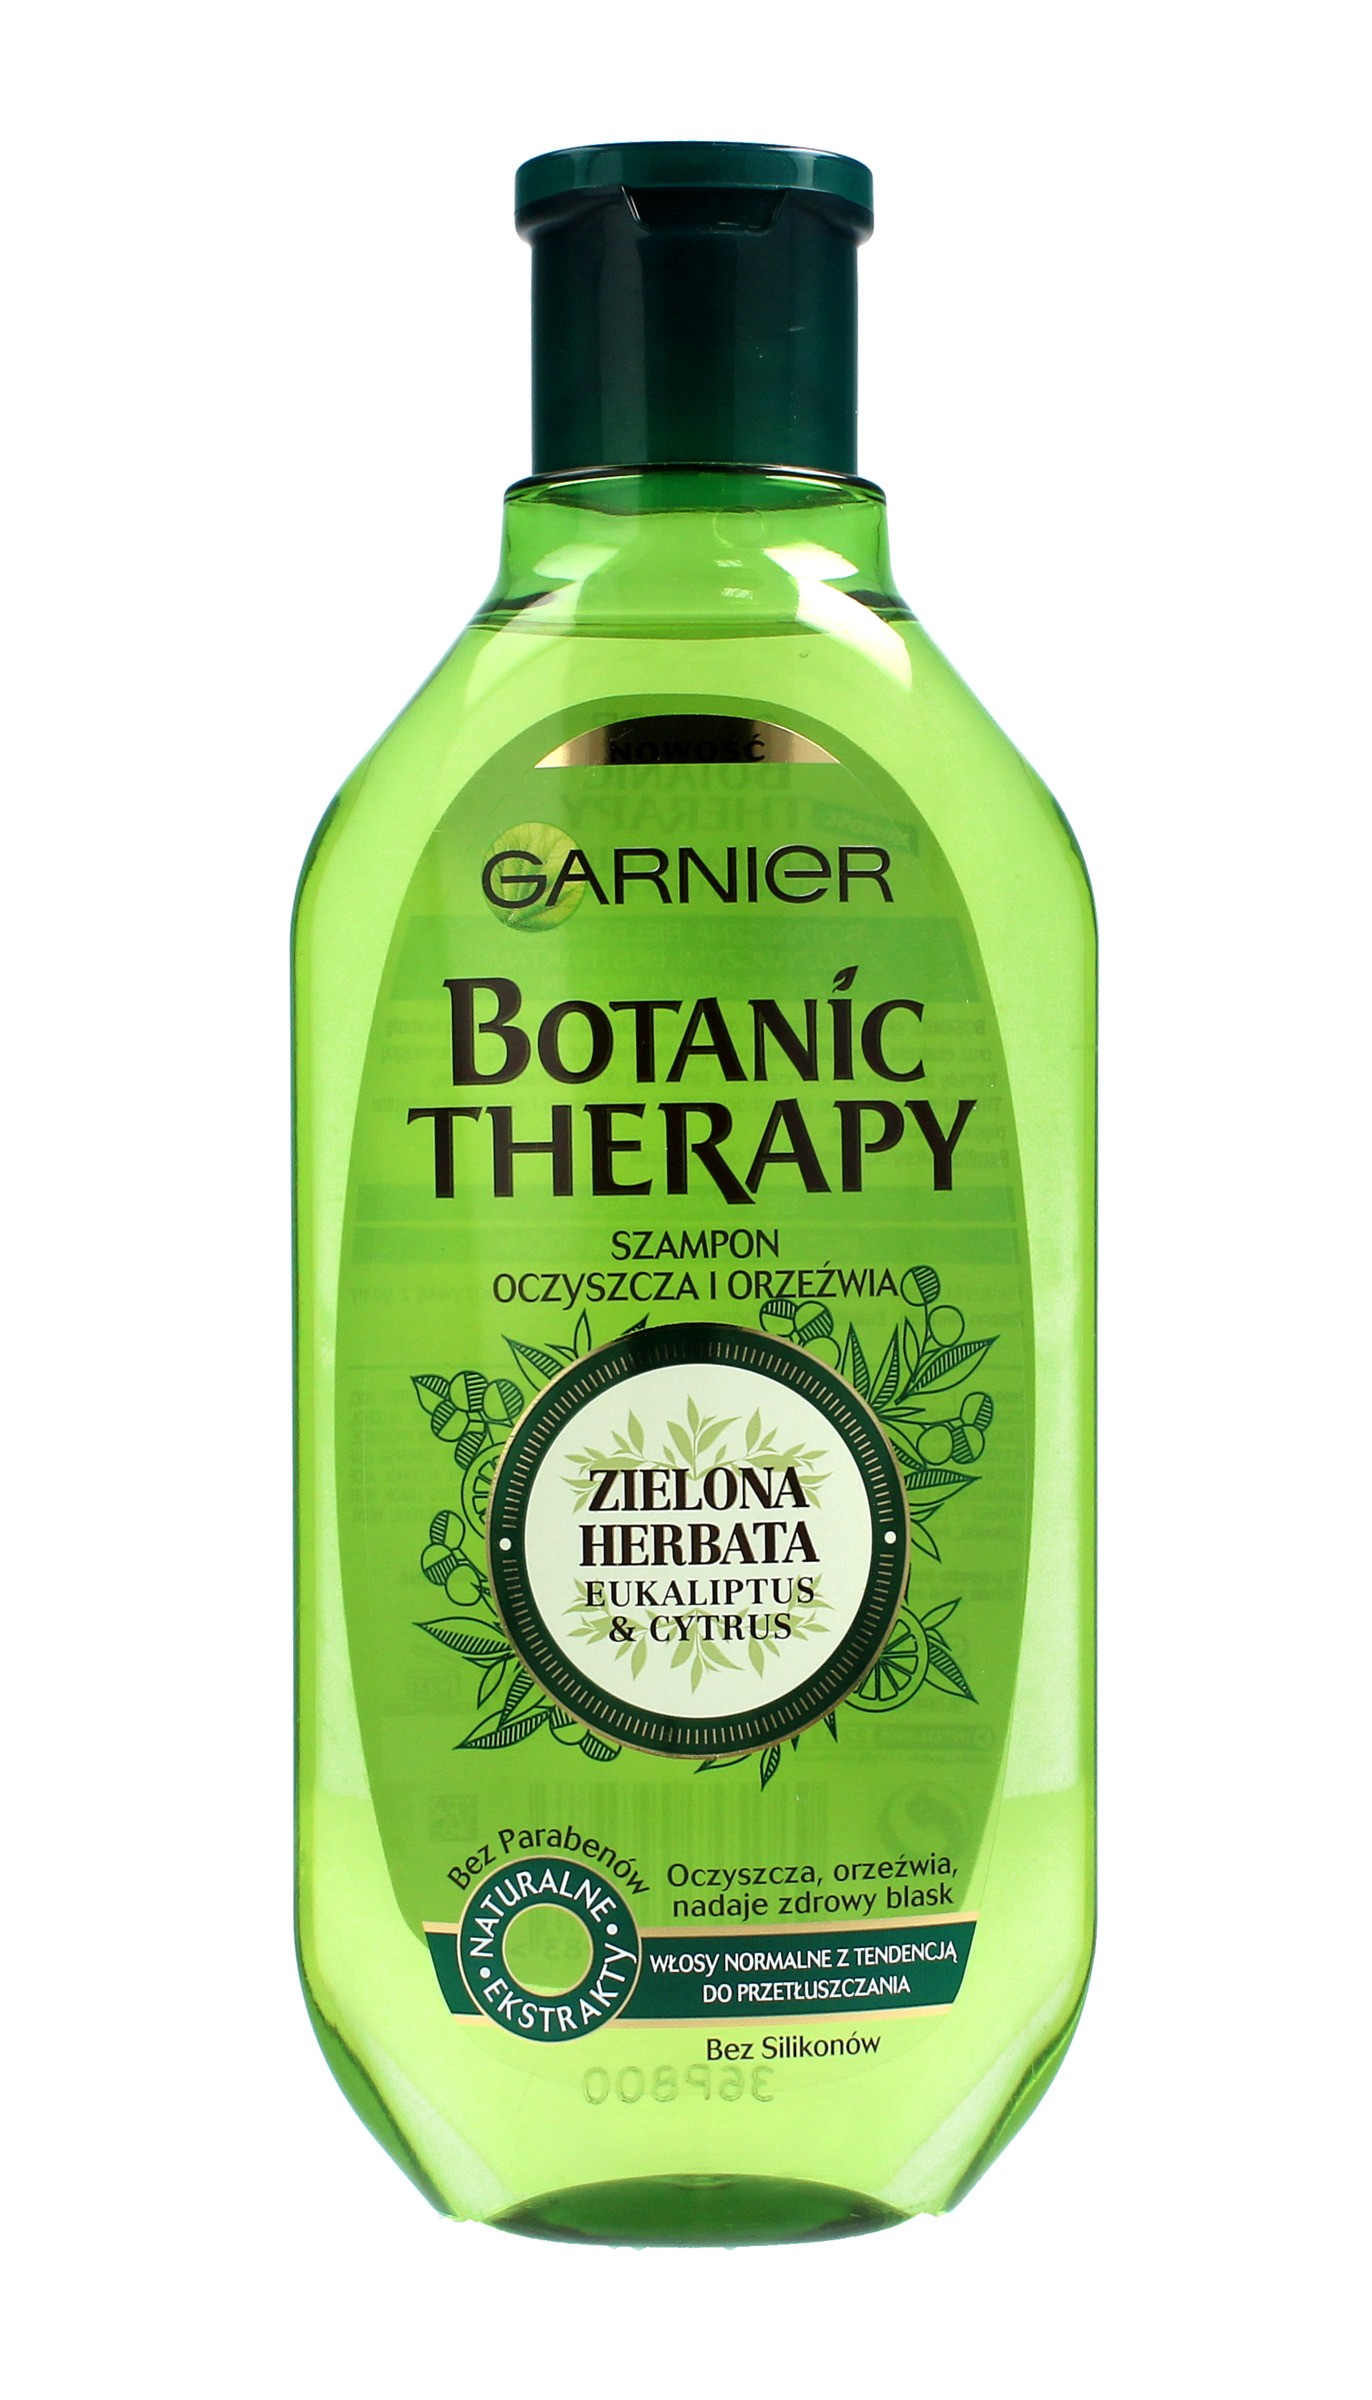 botanic therapy zielona herbata eukaliptus & cytrus szampon do włosów